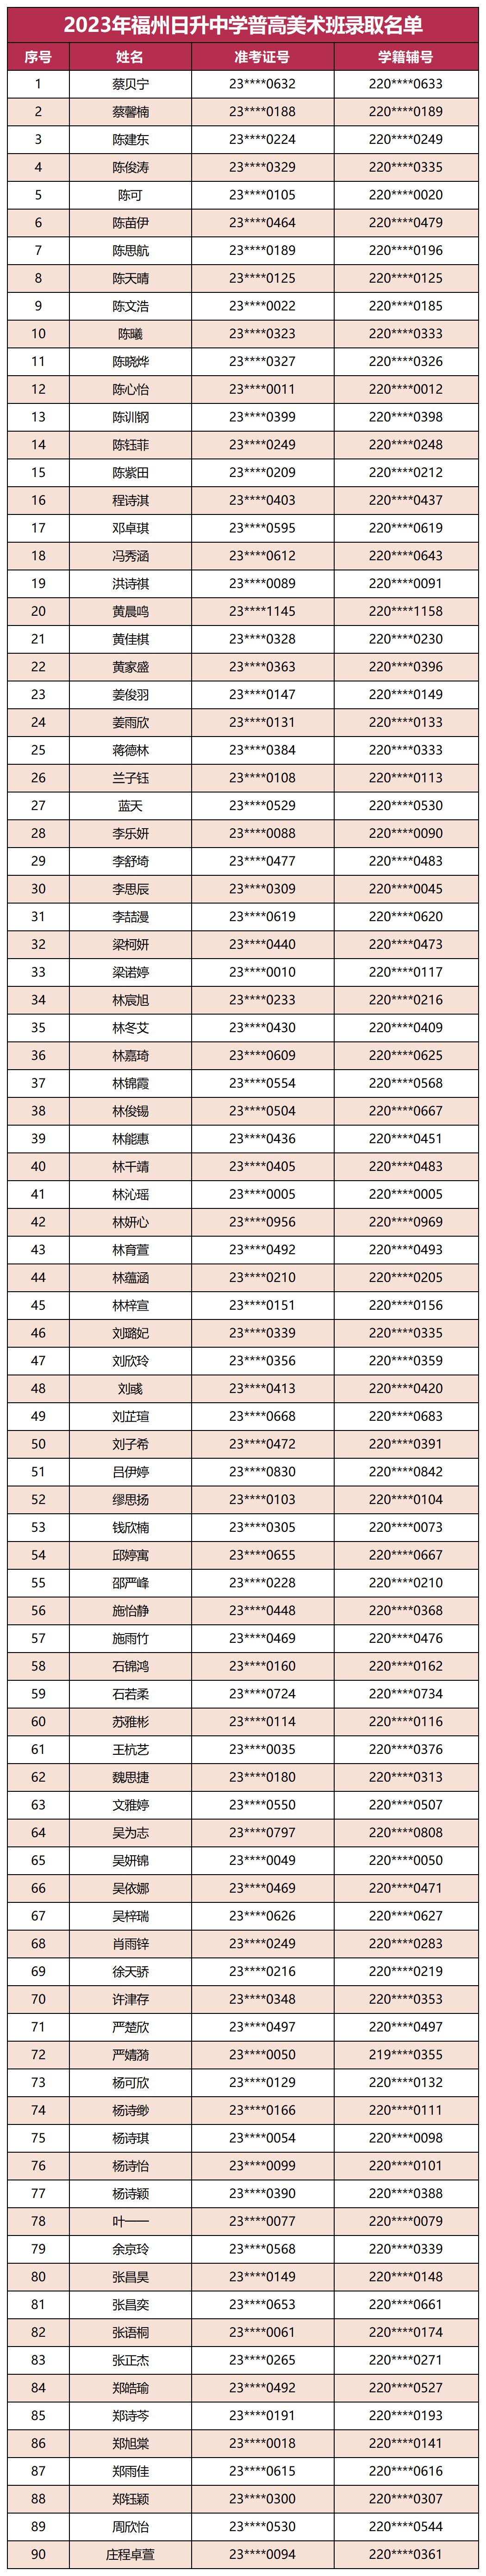 2023年福州日升中学普高美术班录取名单_表格数据.jpg